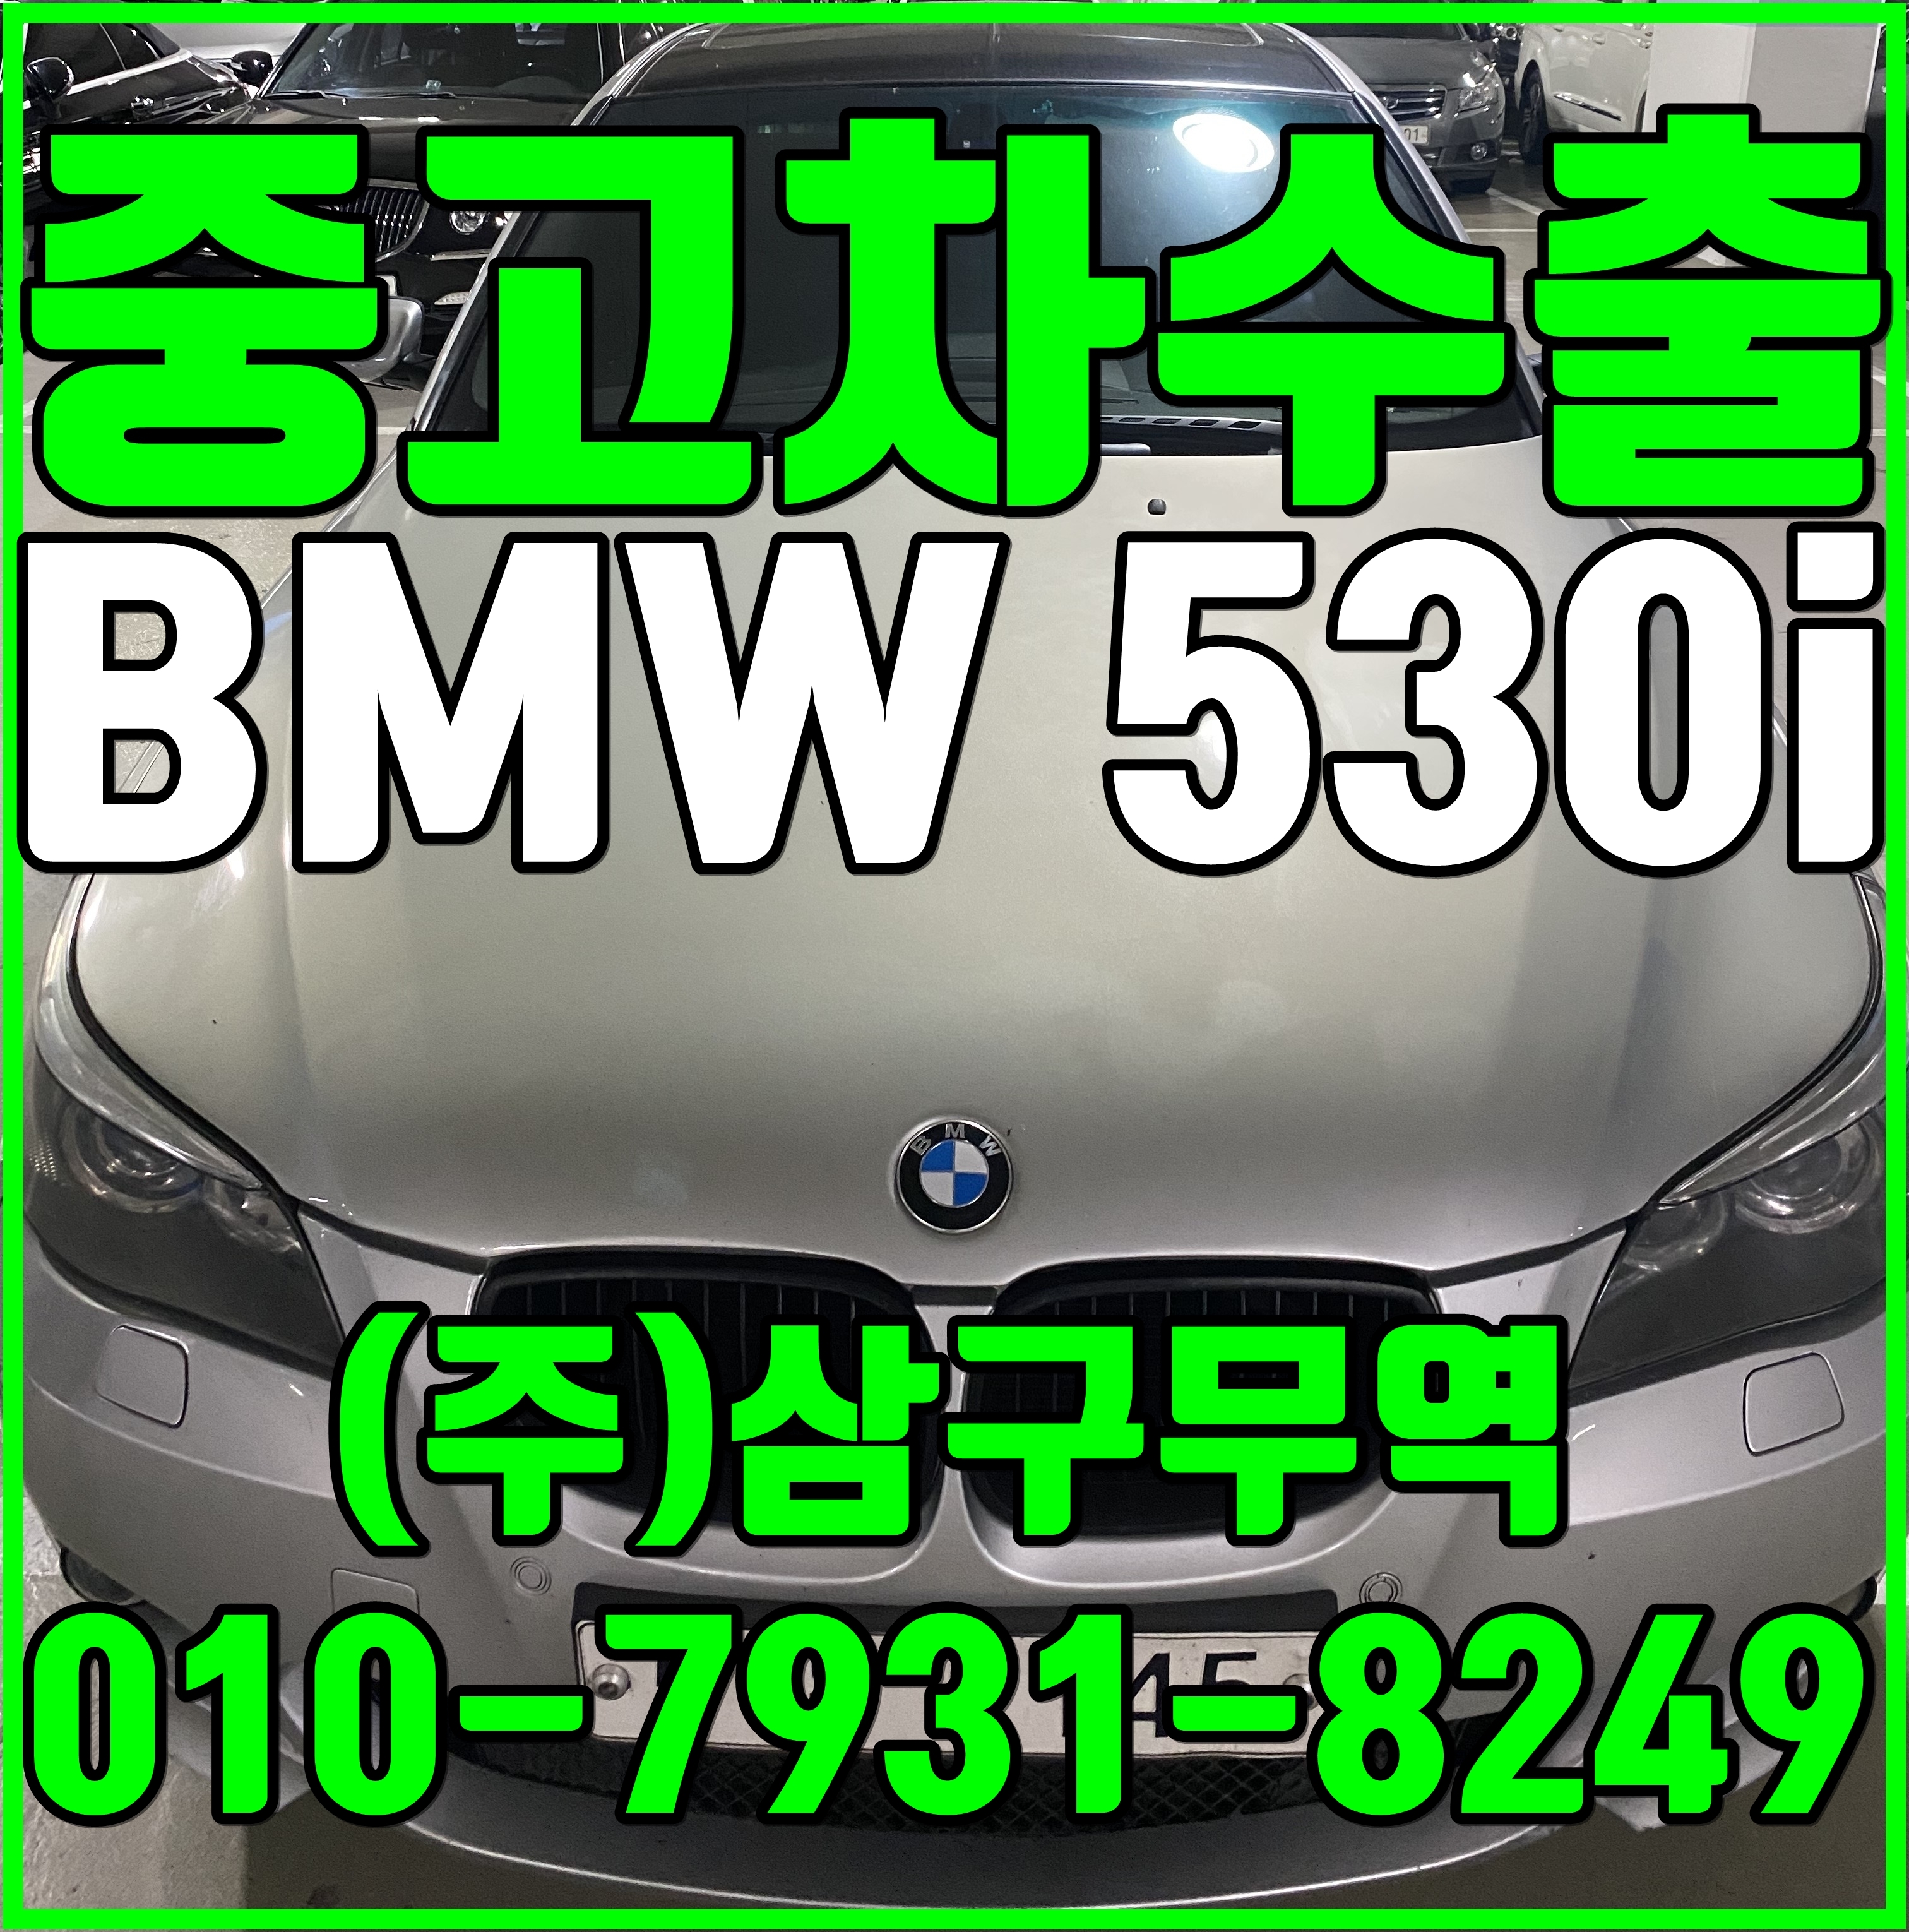 중고차수출 경기의정부 BMW 530i 수출매입후기